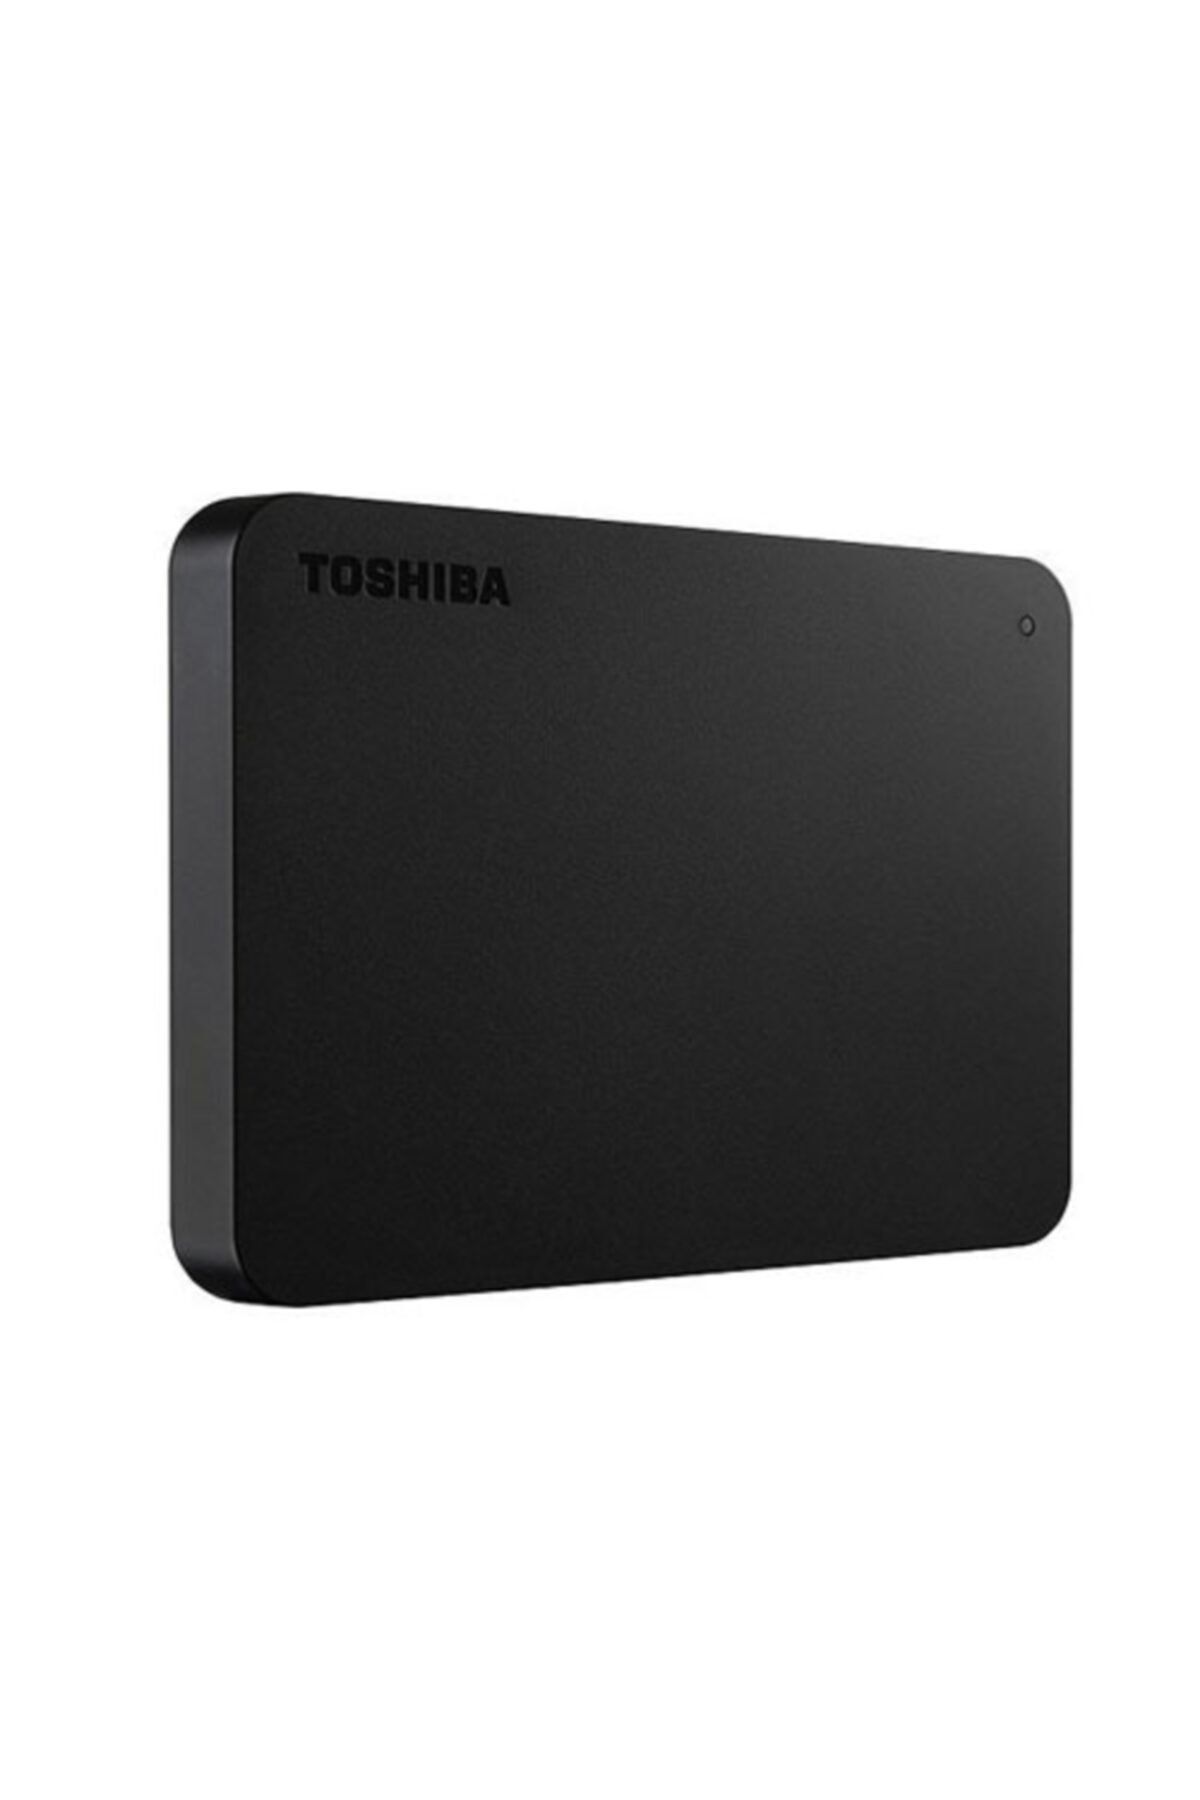 Toshiba HDTB410EK3AA Canvio Basics 1TB Portable External Hard Drive USB 3.0  : Electronics 